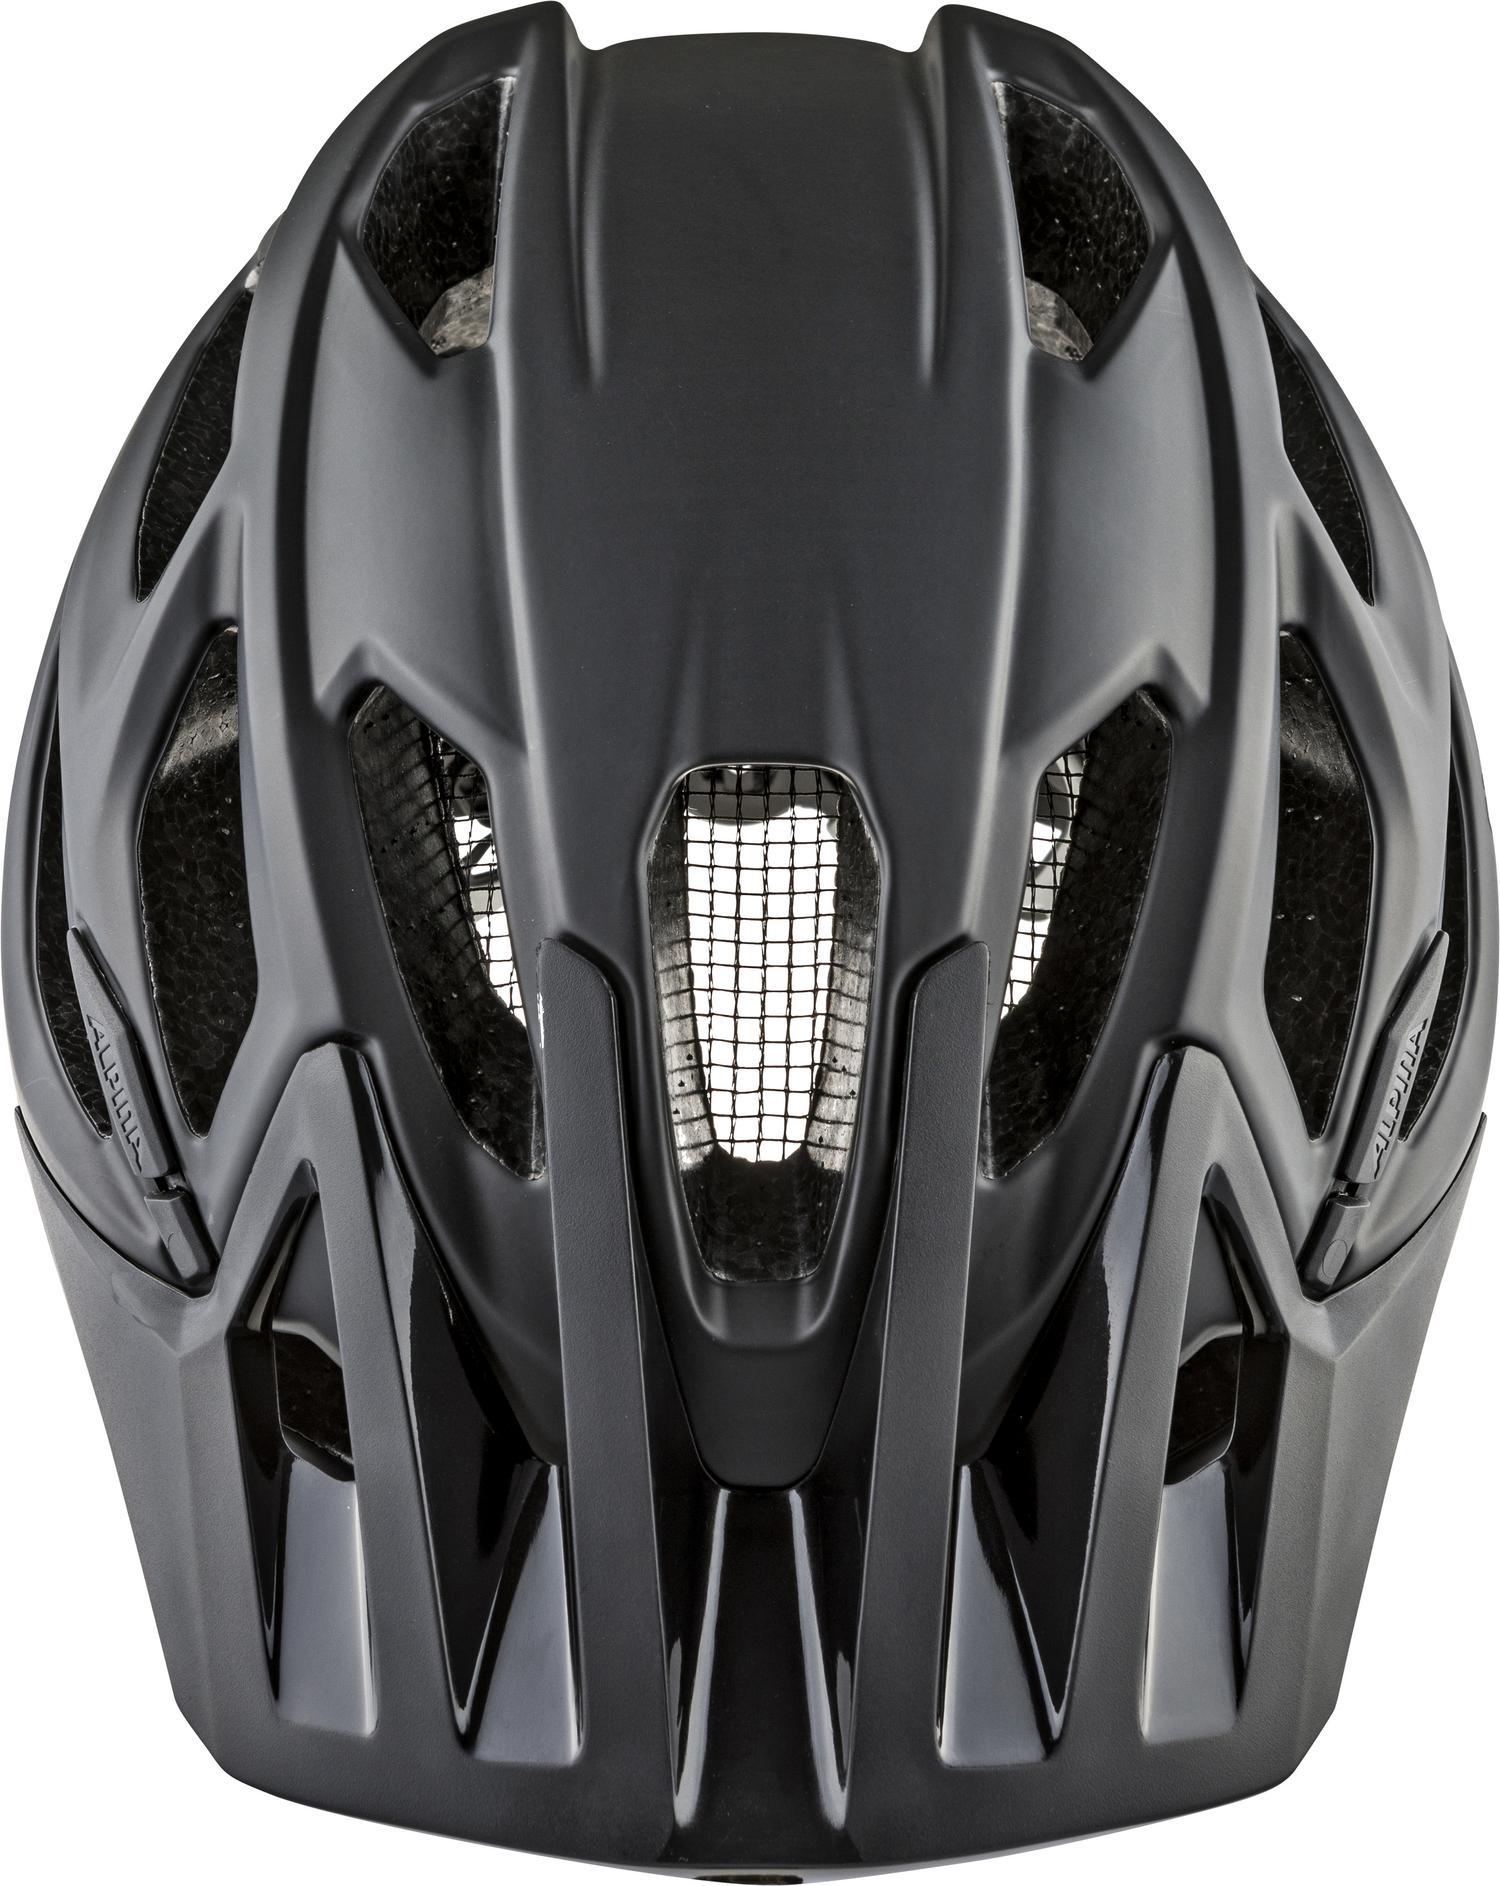 Велосипедный шлем Alpina Garbanzo, black matt, L